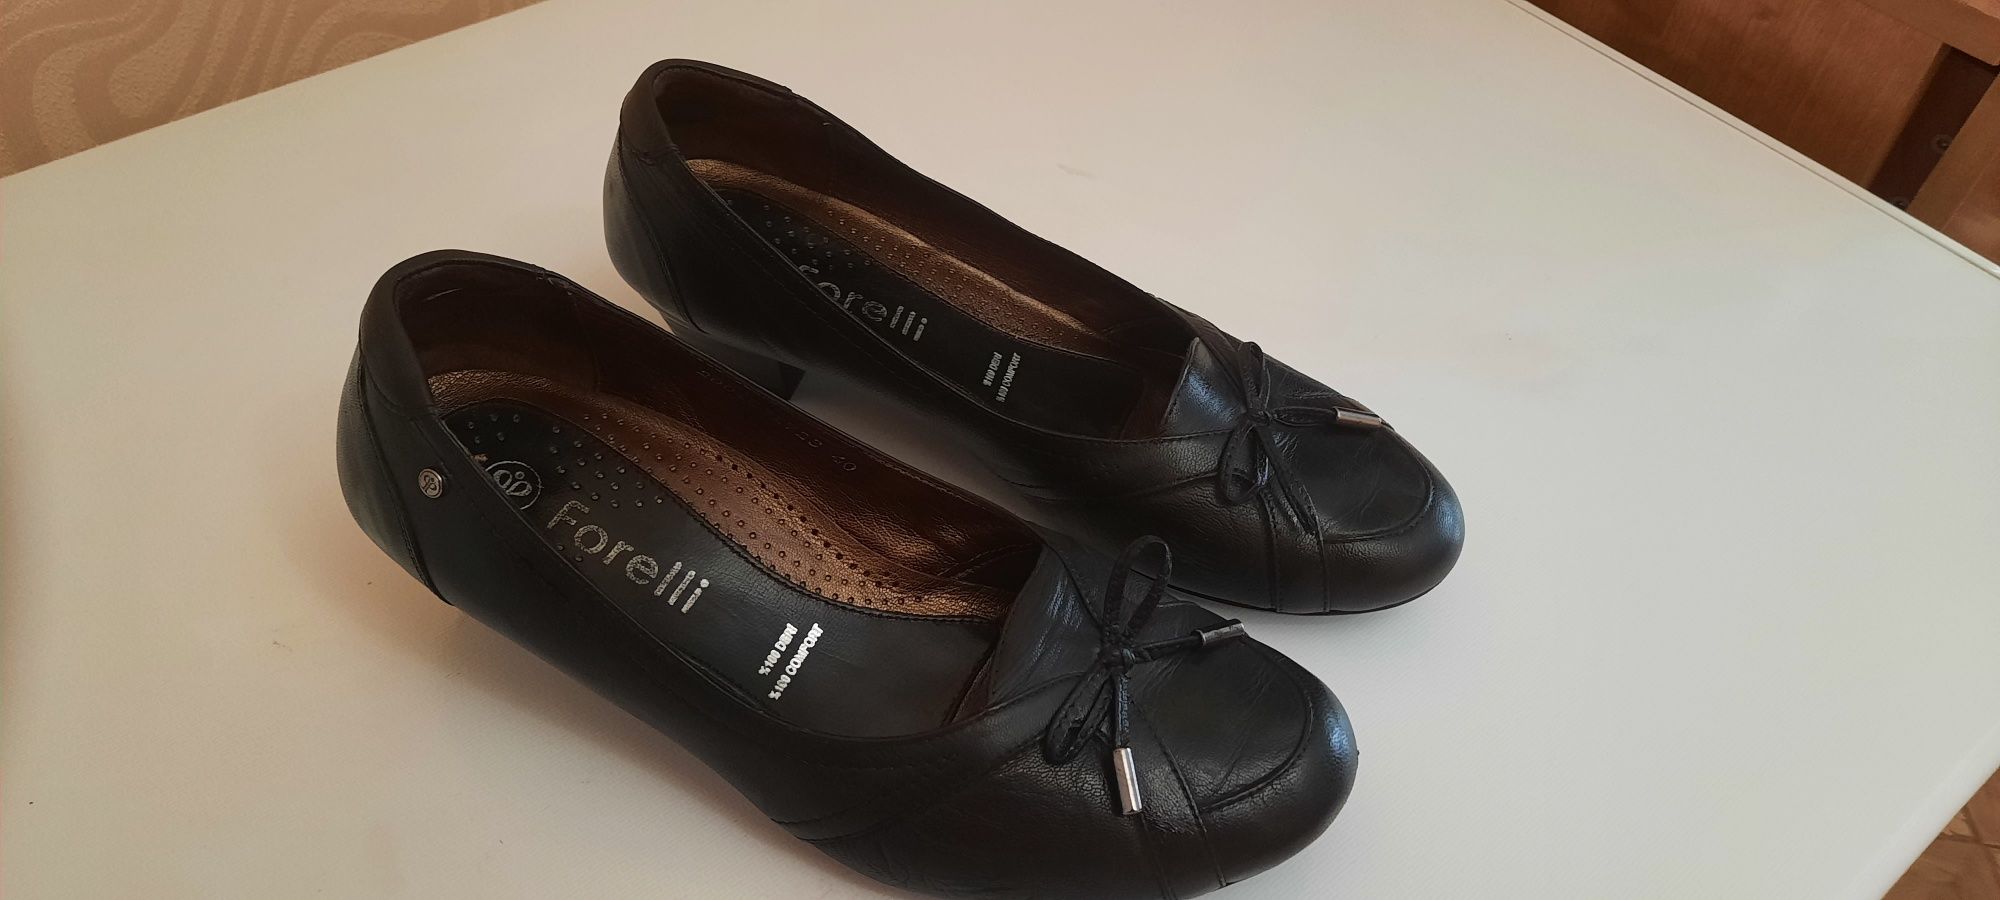 Продам кожанные туфли Турецкого бренда Форель